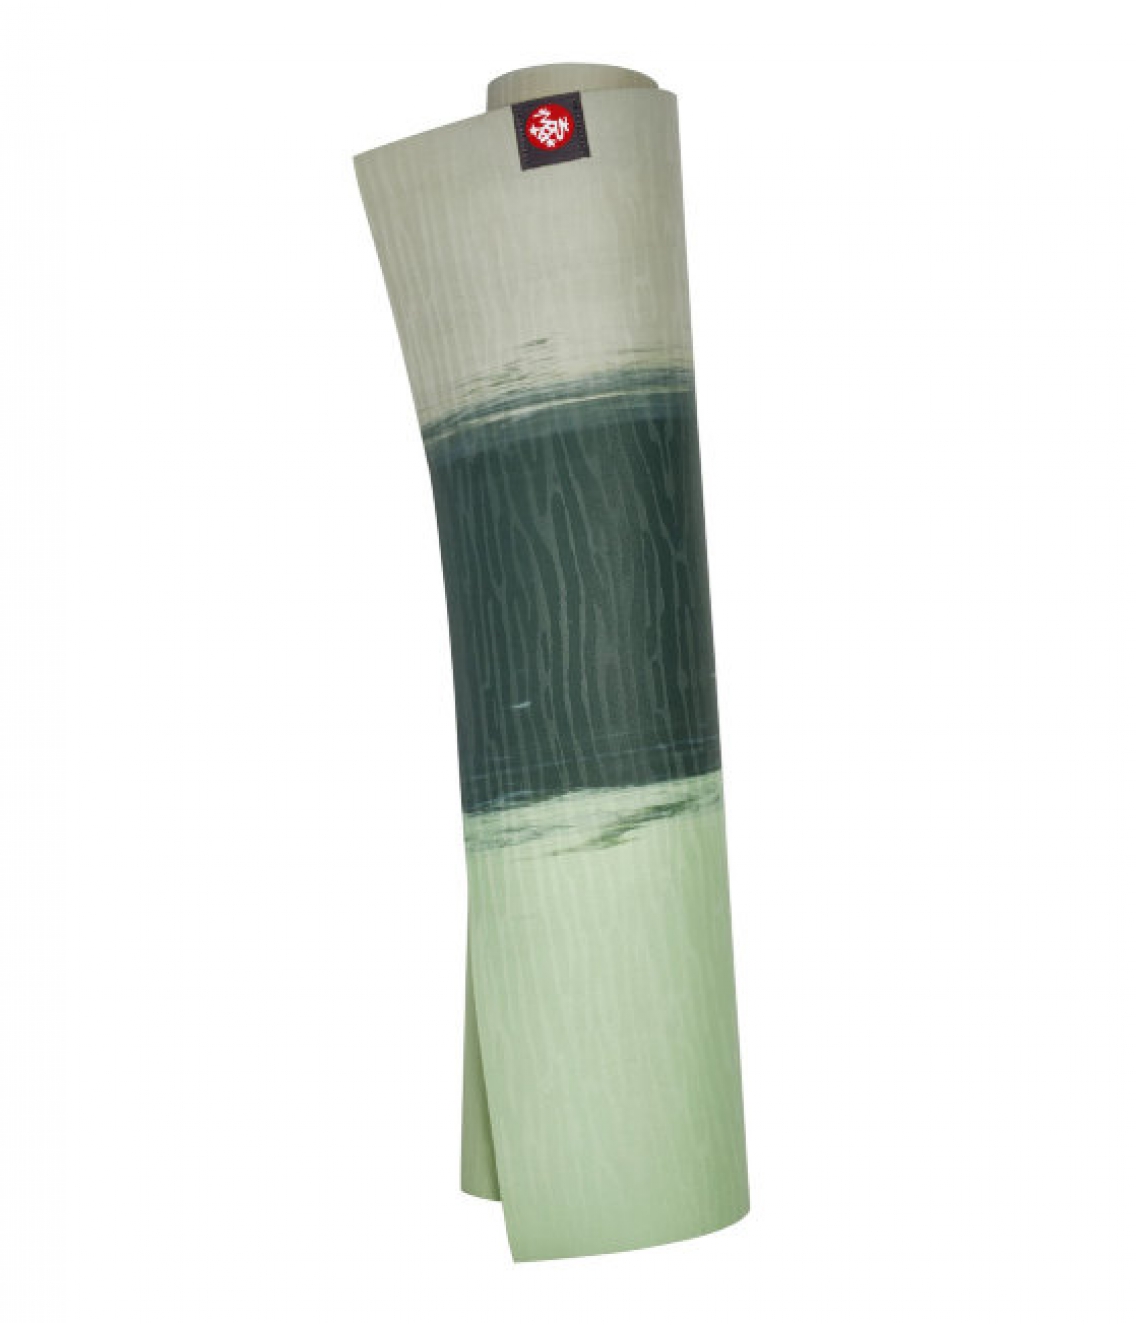 Профессиональный каучуковый коврик для йоги Manduka eKO lite 180*61*0,4 см - Green Ash Stripe (Limited Edition)